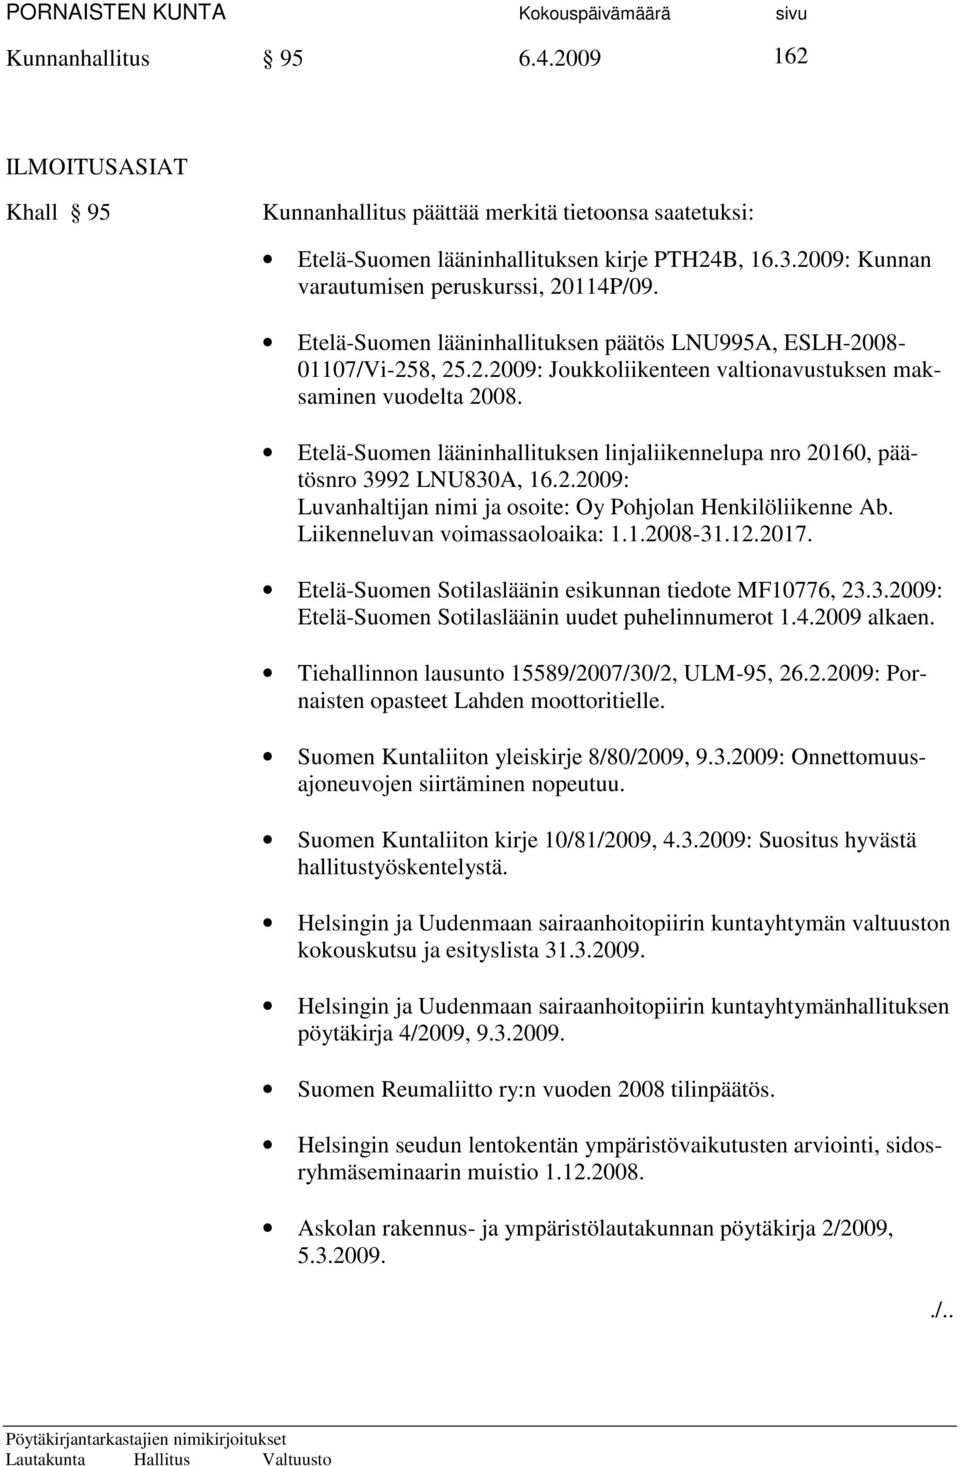 Etelä-Suomen lääninhallituksen linjaliikennelupa nro 20160, päätösnro 3992 LNU830A, 16.2.2009: Luvanhaltijan nimi ja osoite: Oy Pohjolan Henkilöliikenne Ab. Liikenneluvan voimassaoloaika: 1.1.2008-31.